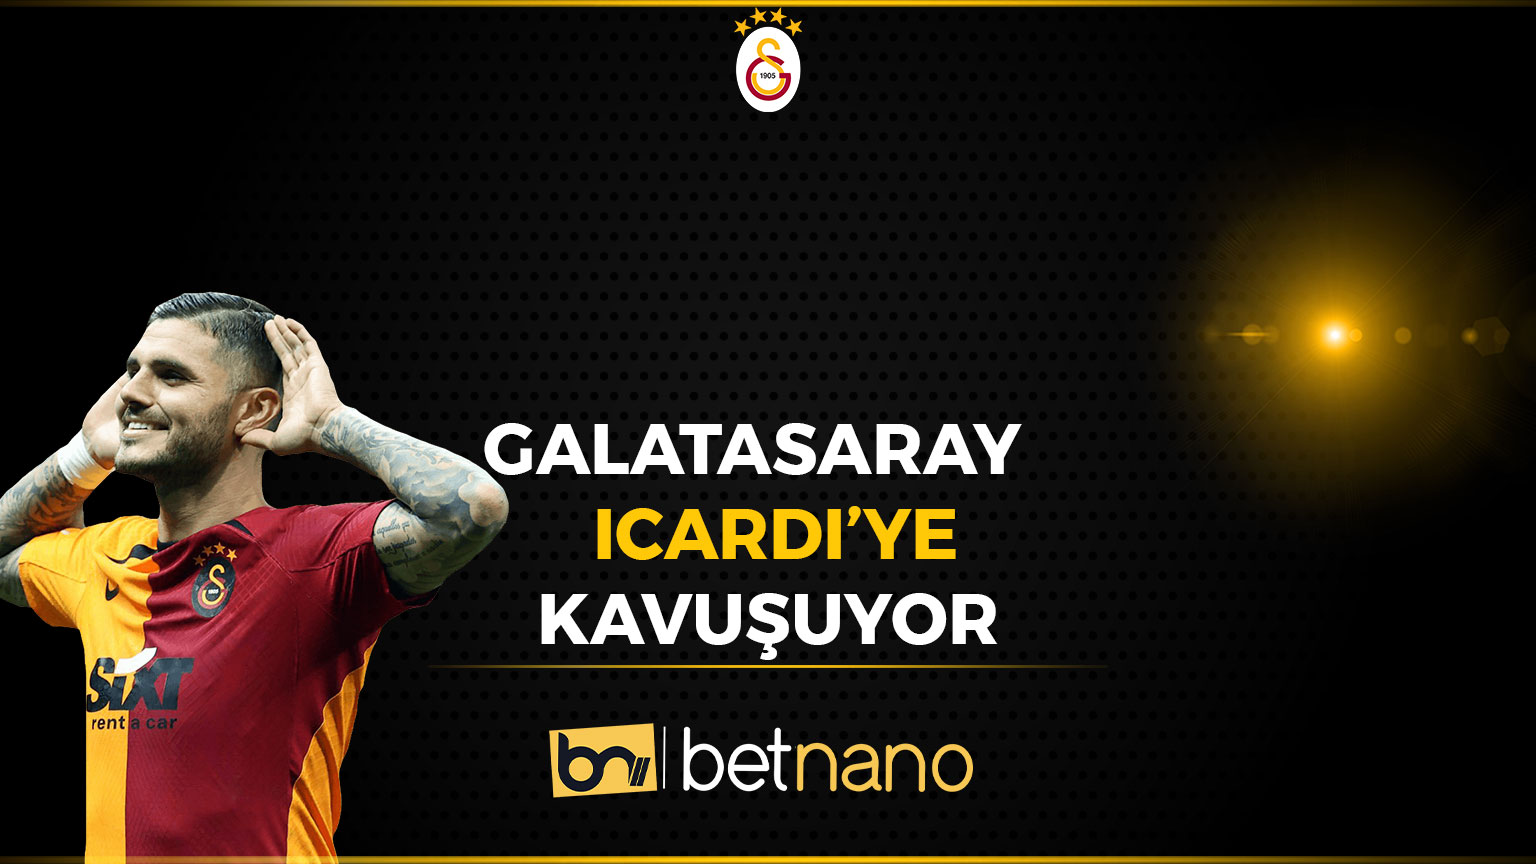 Galatasaray Icardi’ye Kavuşuyor!